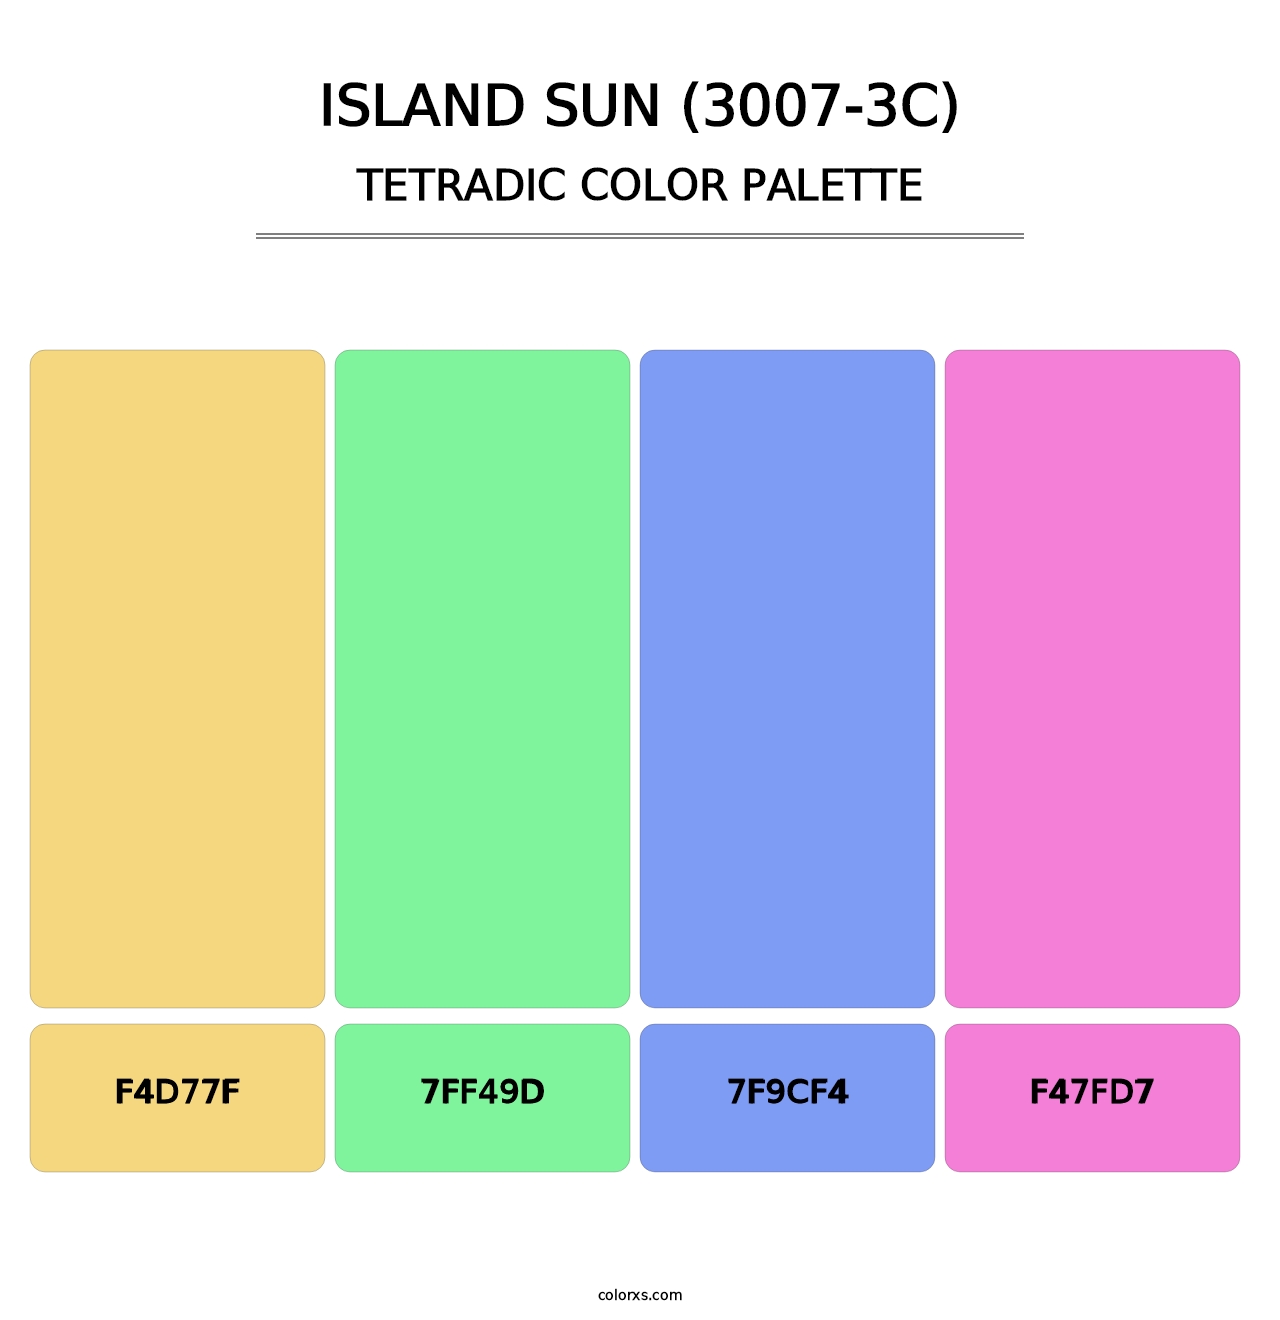 Island Sun (3007-3C) - Tetradic Color Palette